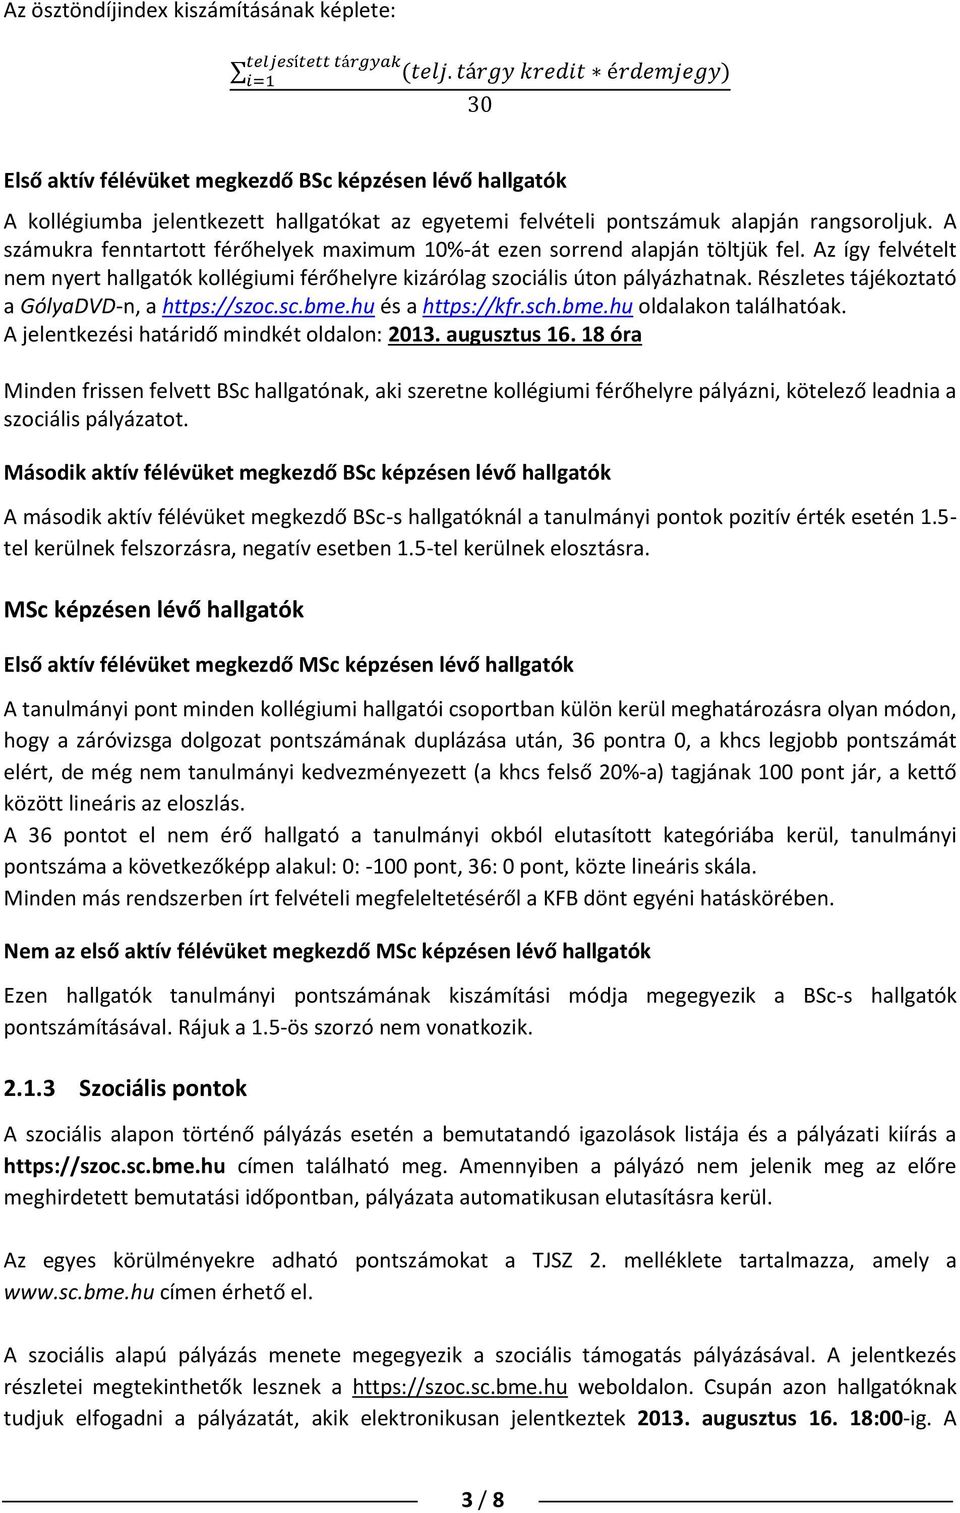 Részletes tájékoztató a GólyaDVD-n, a https://szoc.sc.bme.hu és a https://kfr.sch.bme.hu oldalakon találhatóak. A jelentkezési határidő mindkét oldalon: 2013. augusztus 16.